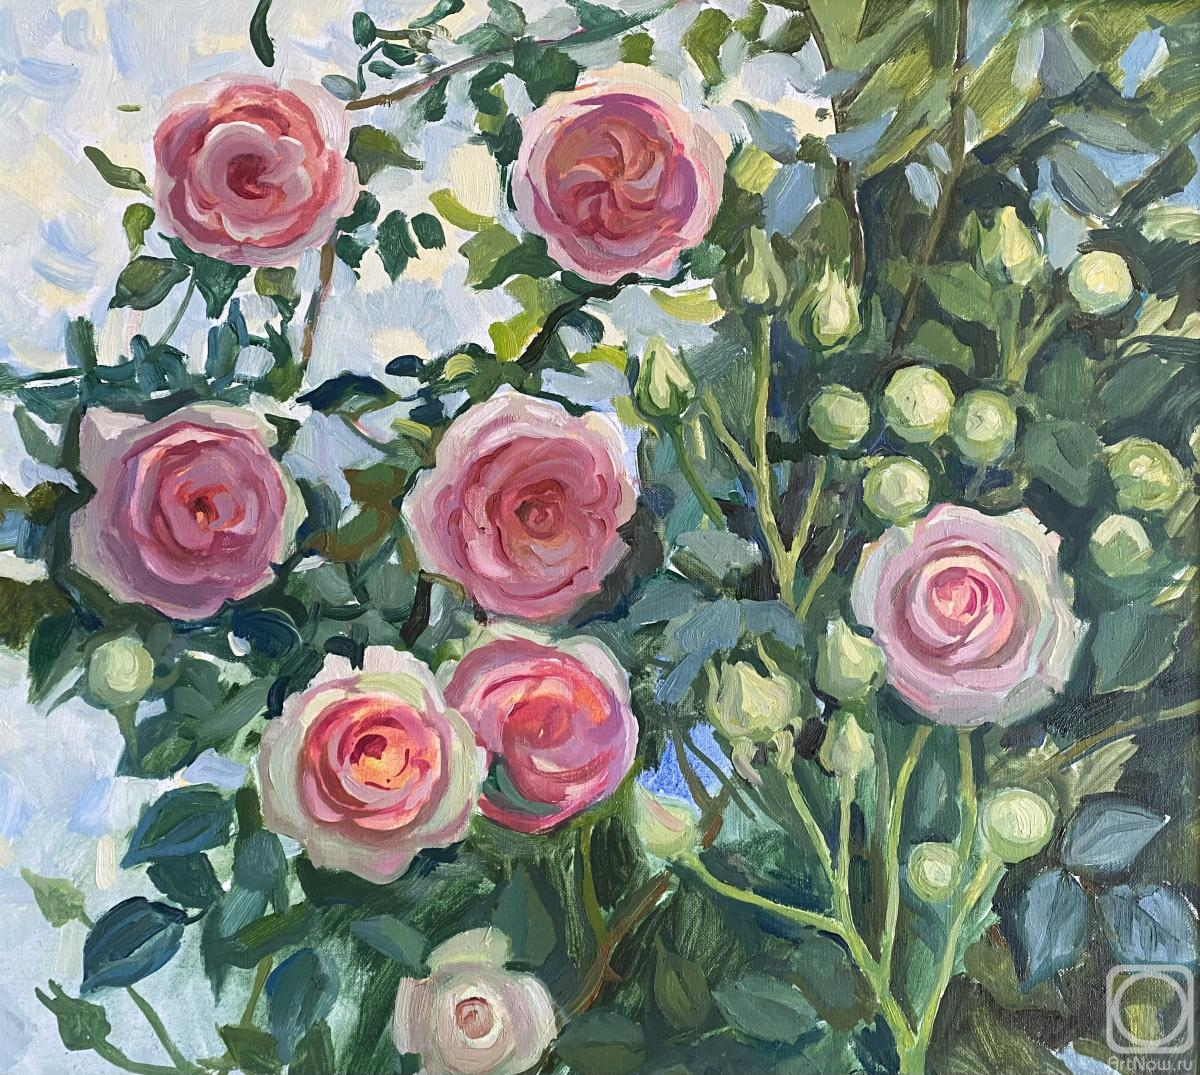 Skachkova Olga. Roses bloom